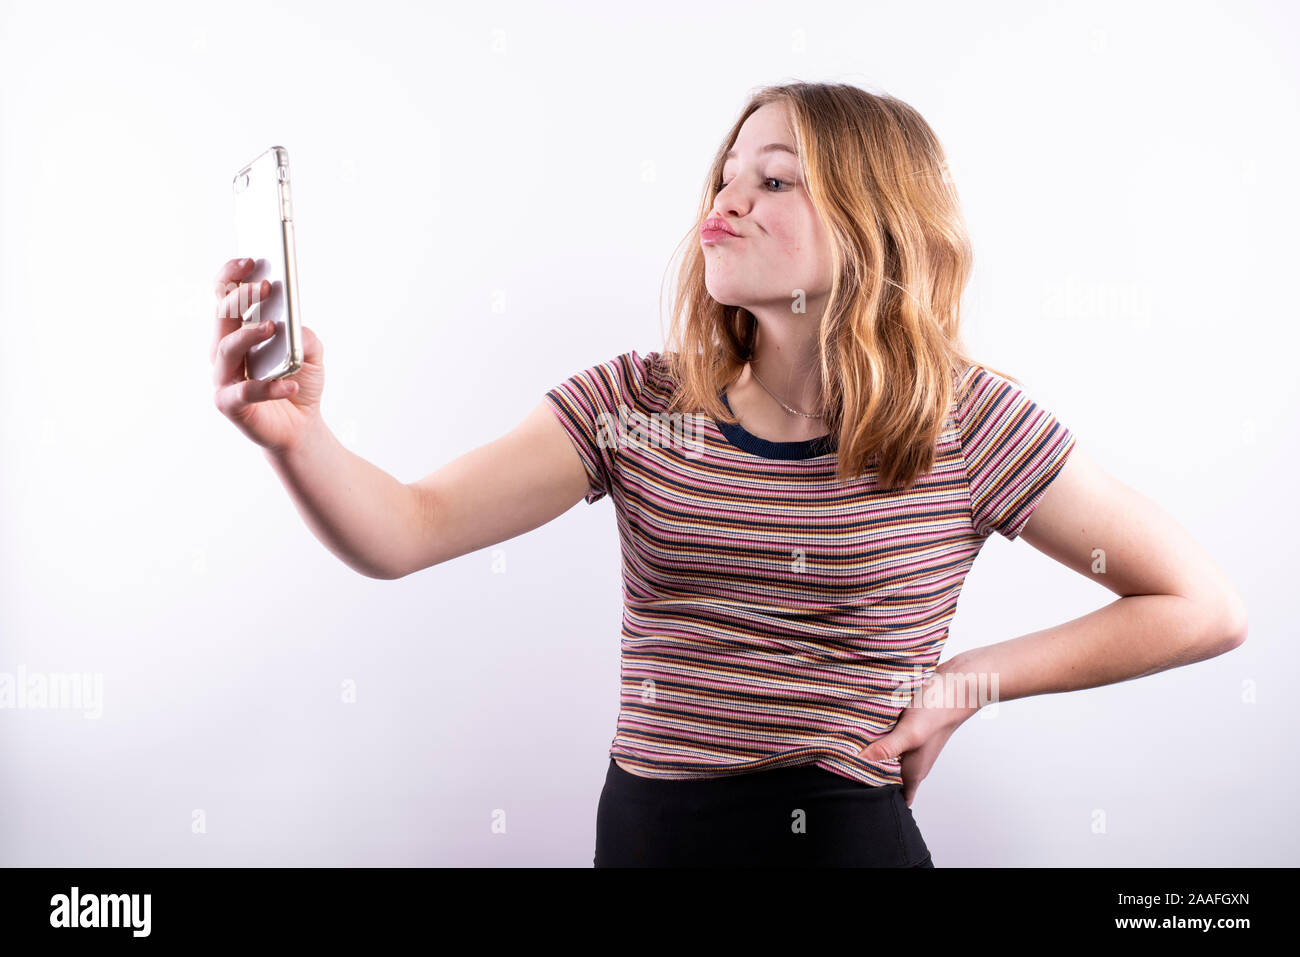 Caucasian ragazza adolescente che indossa un rigato orizzontale T-shirt con un espressione divertente tenendo un selfie con uno smartphone contro uno sfondo bianco Foto Stock